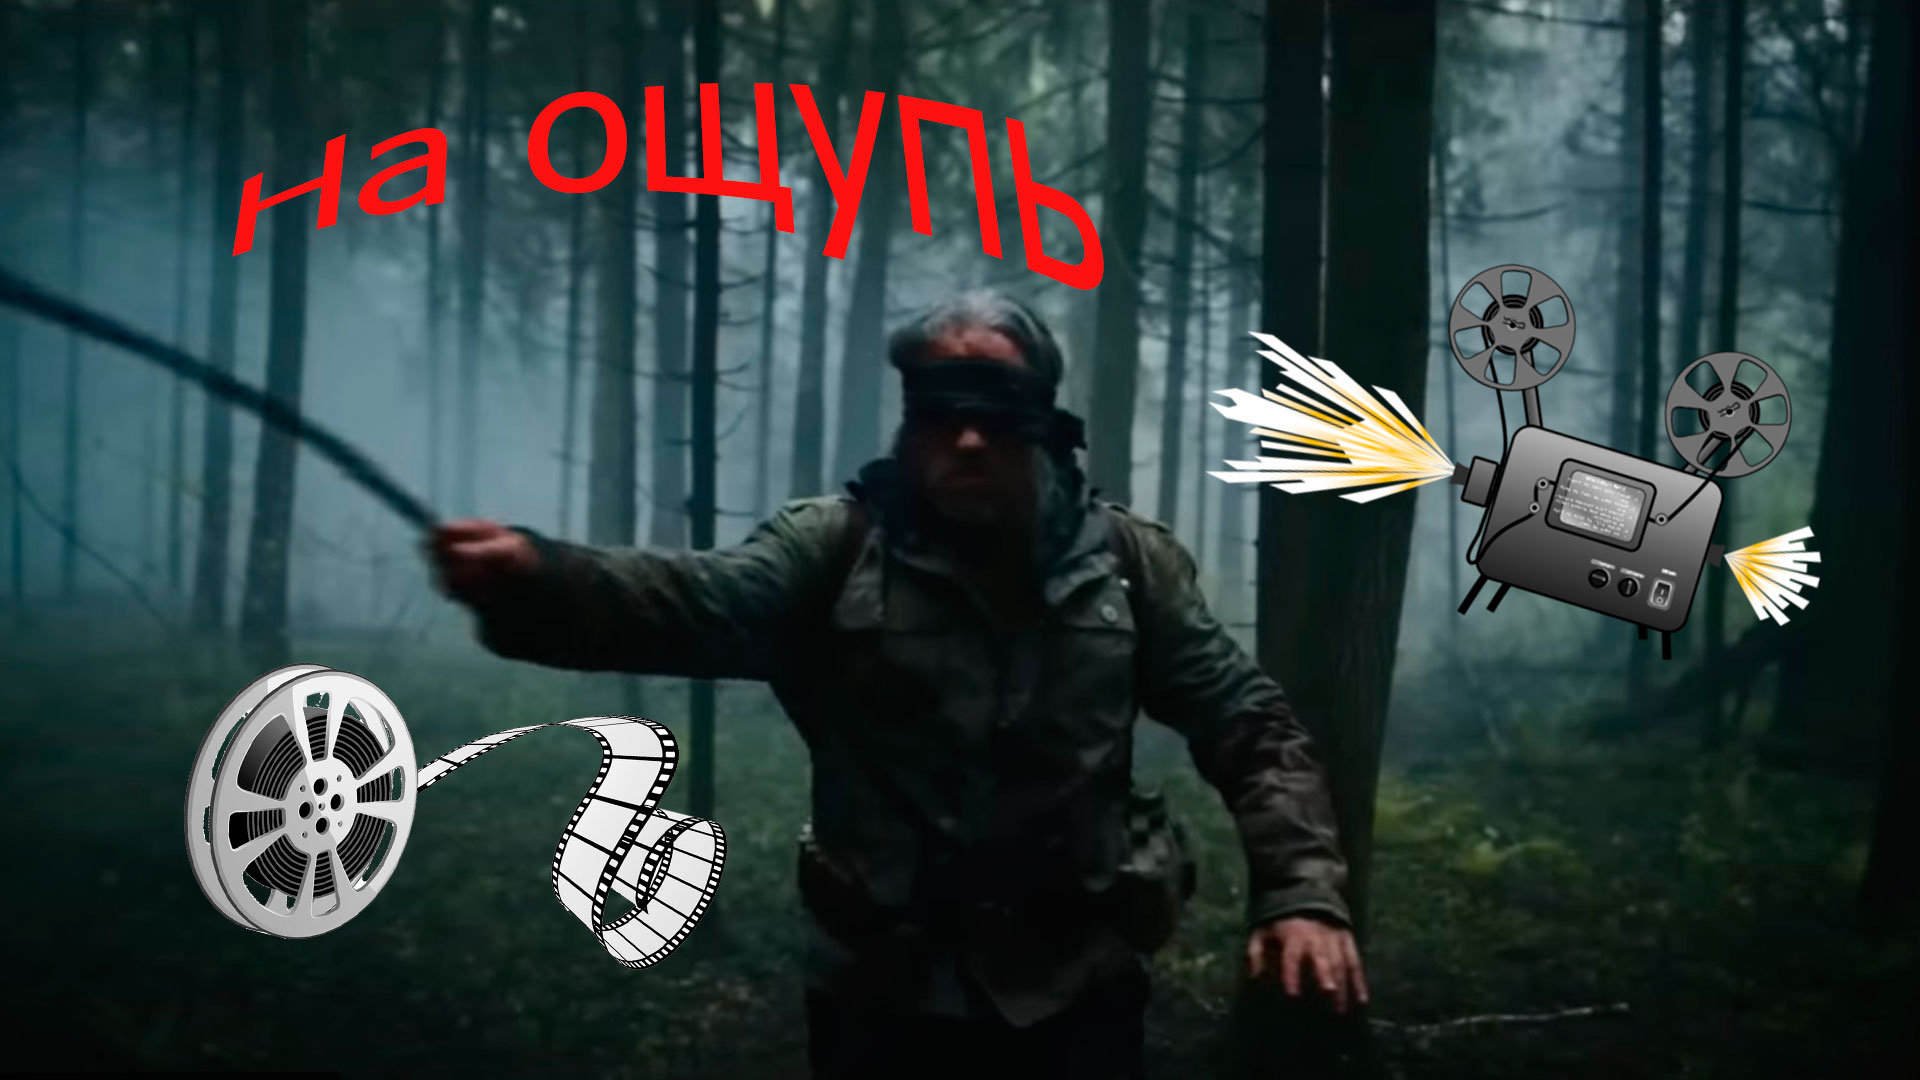 Тизер к фильму На ощупь, главный герой в лесу.